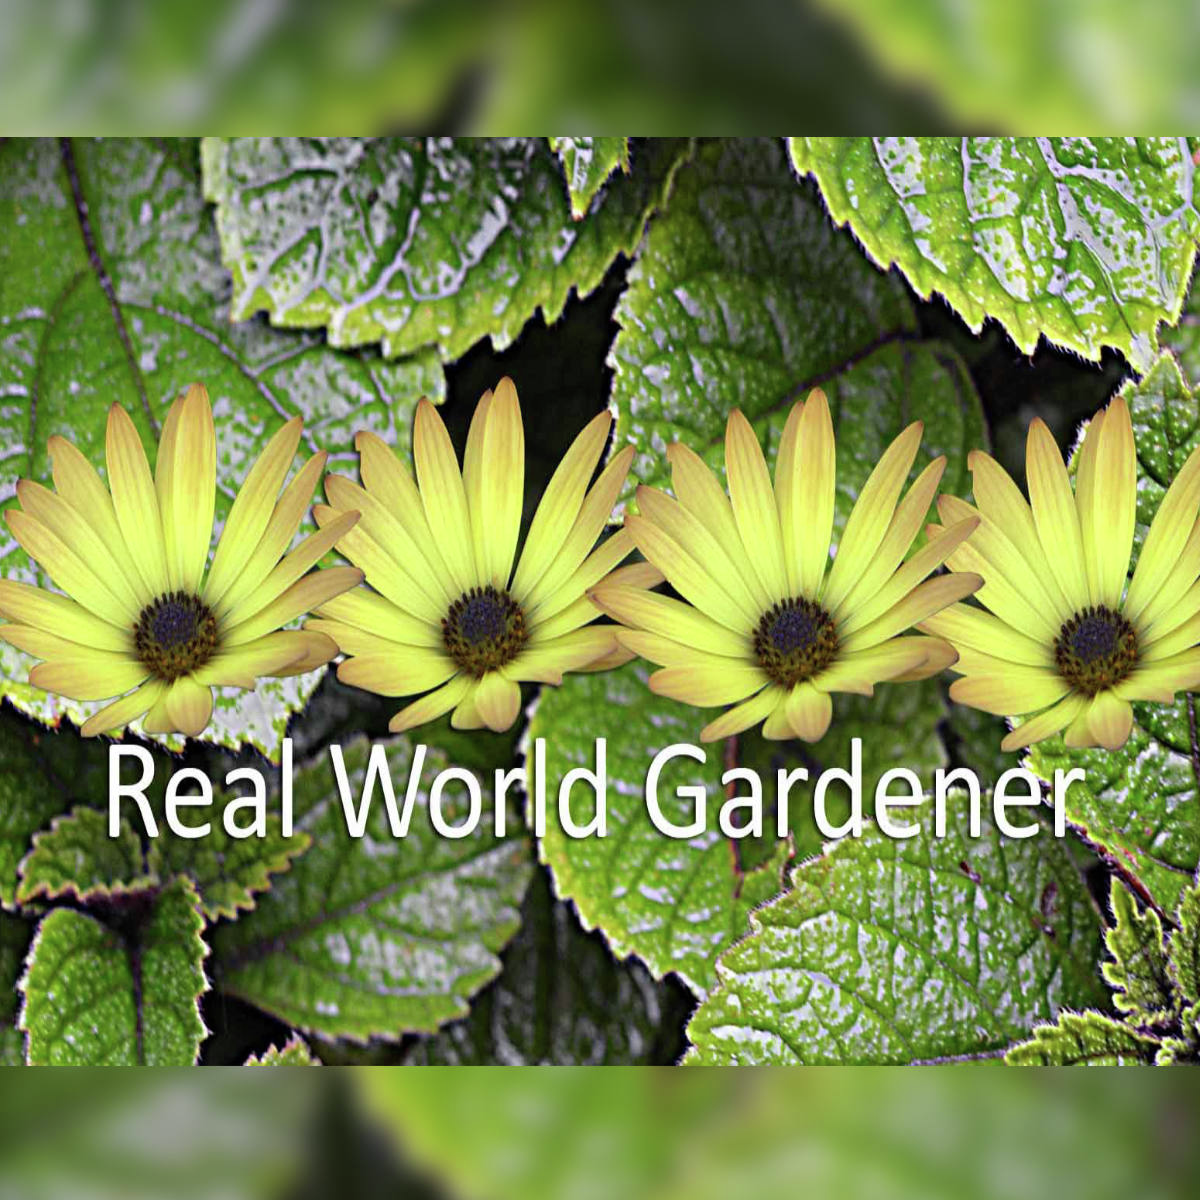 Real World Gardener